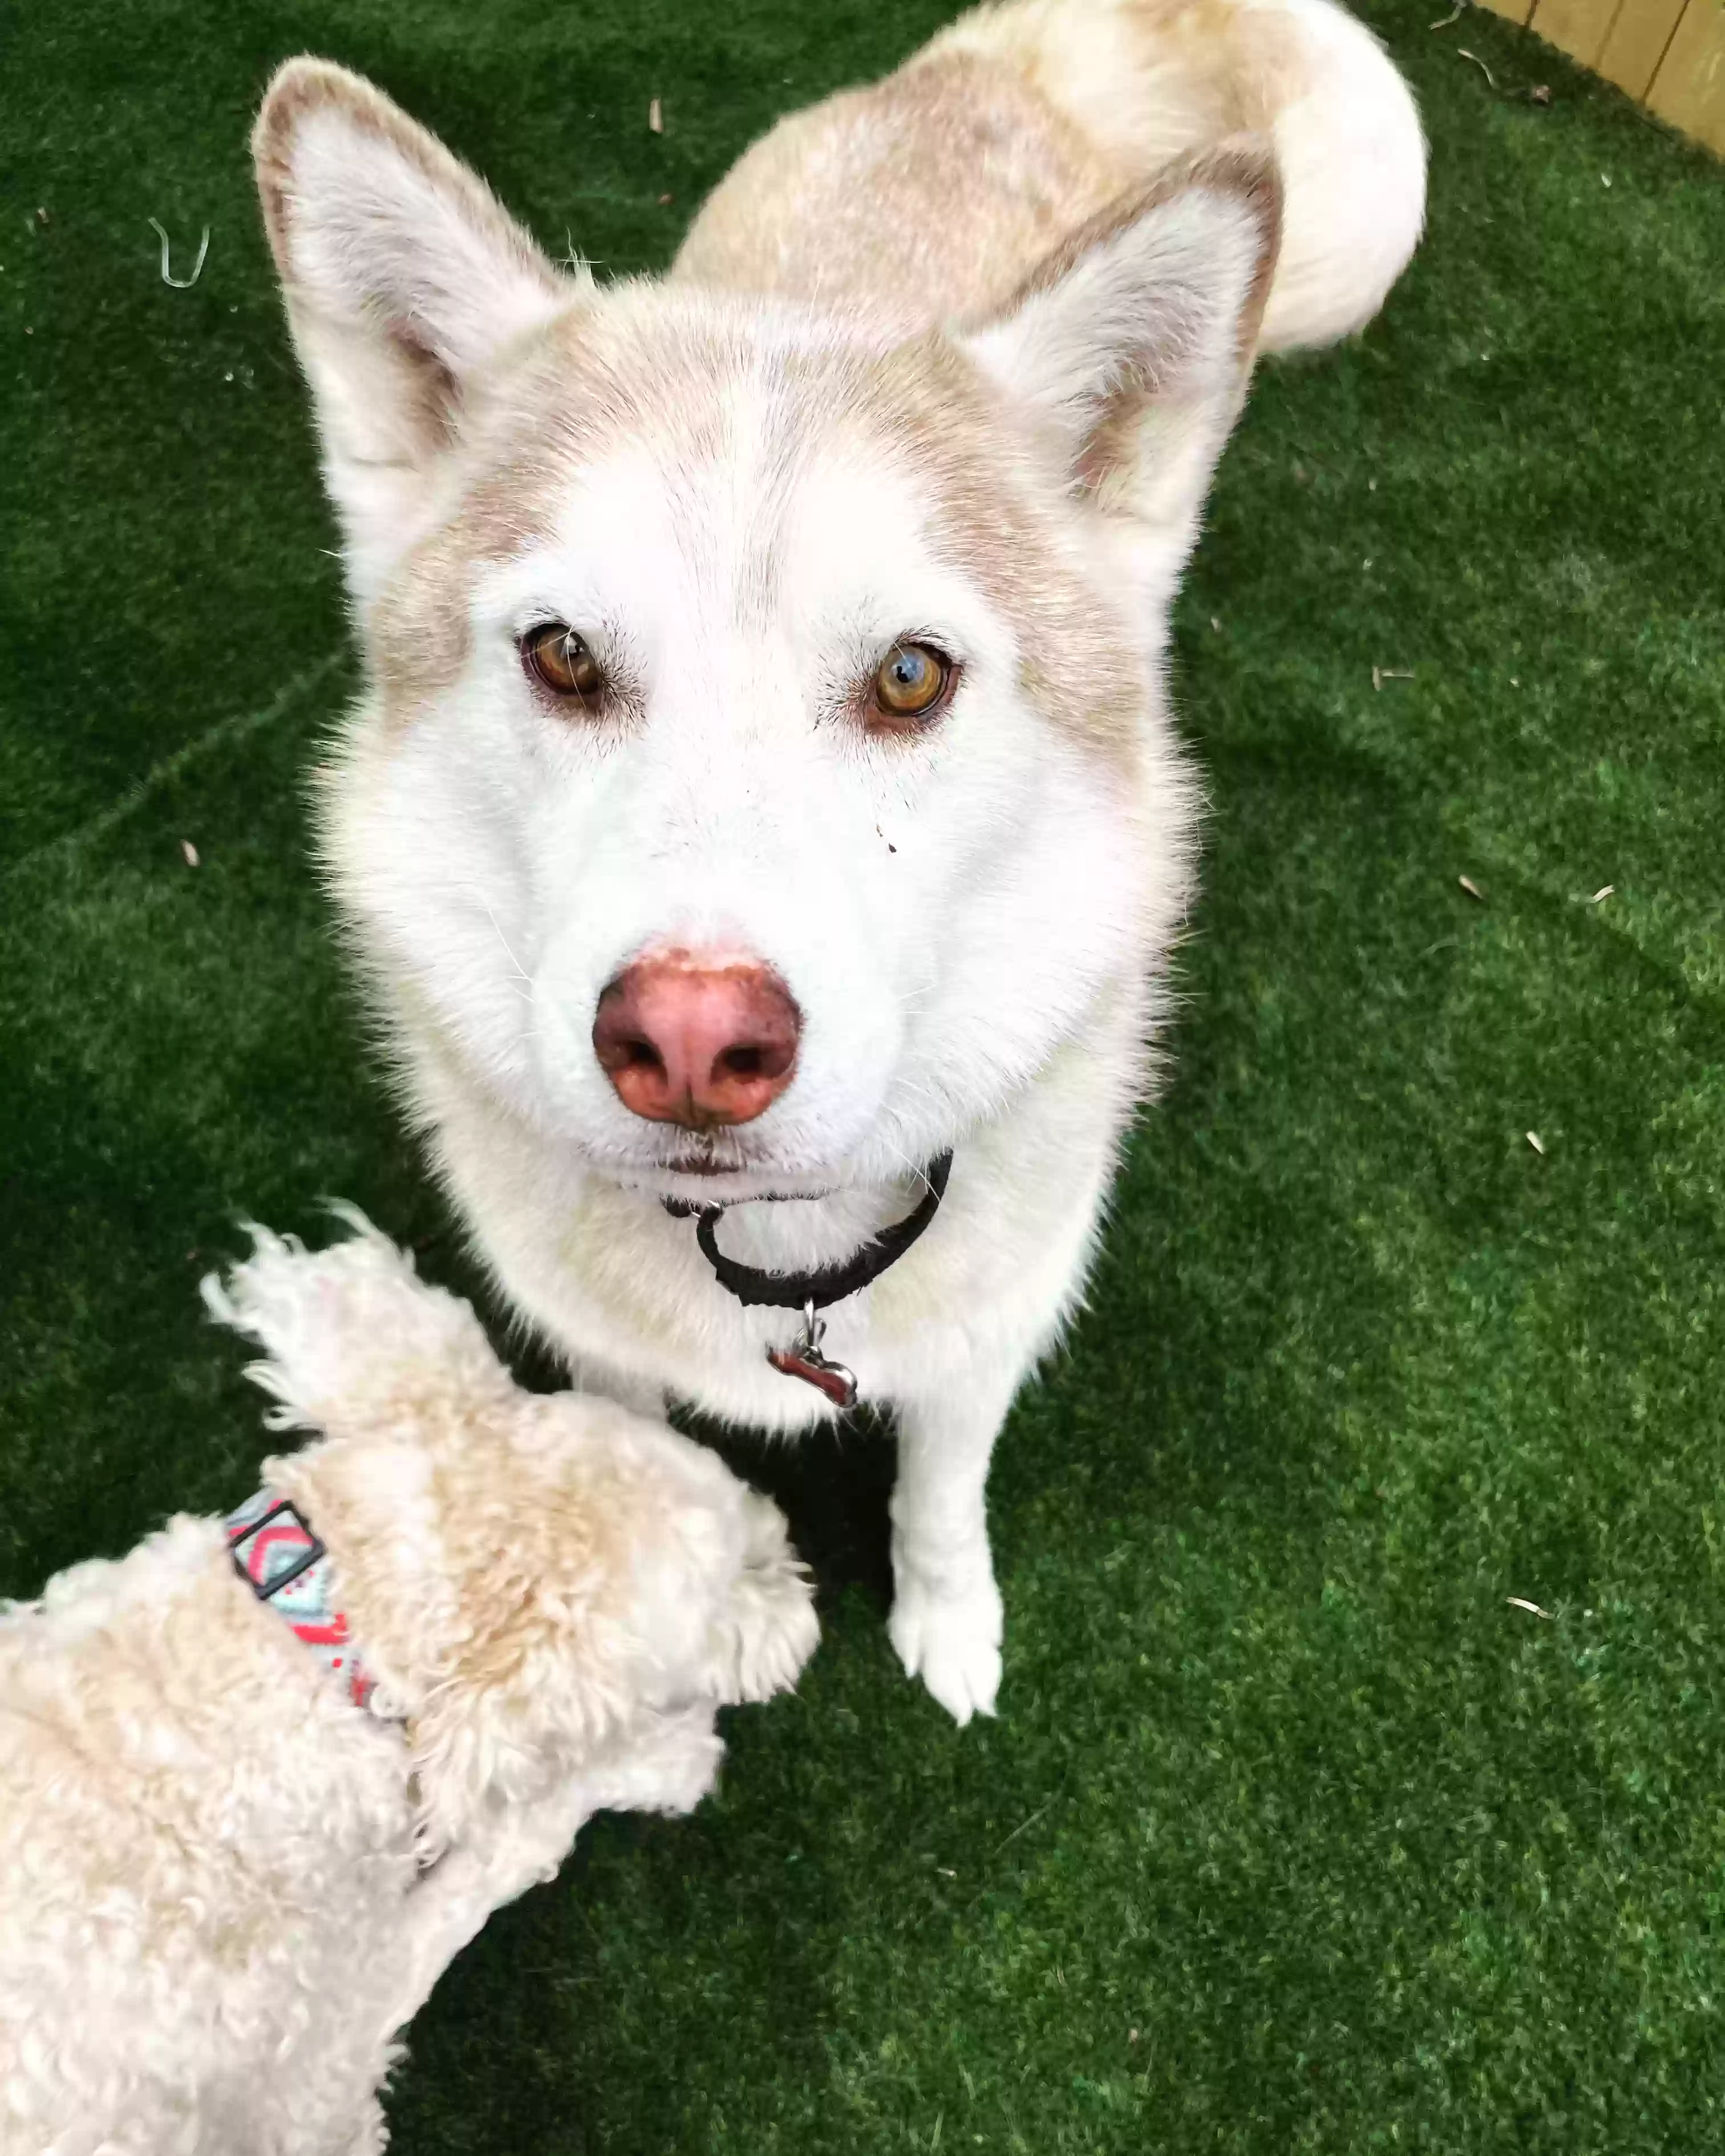 adoptable Dog in Denton,TX named Niko